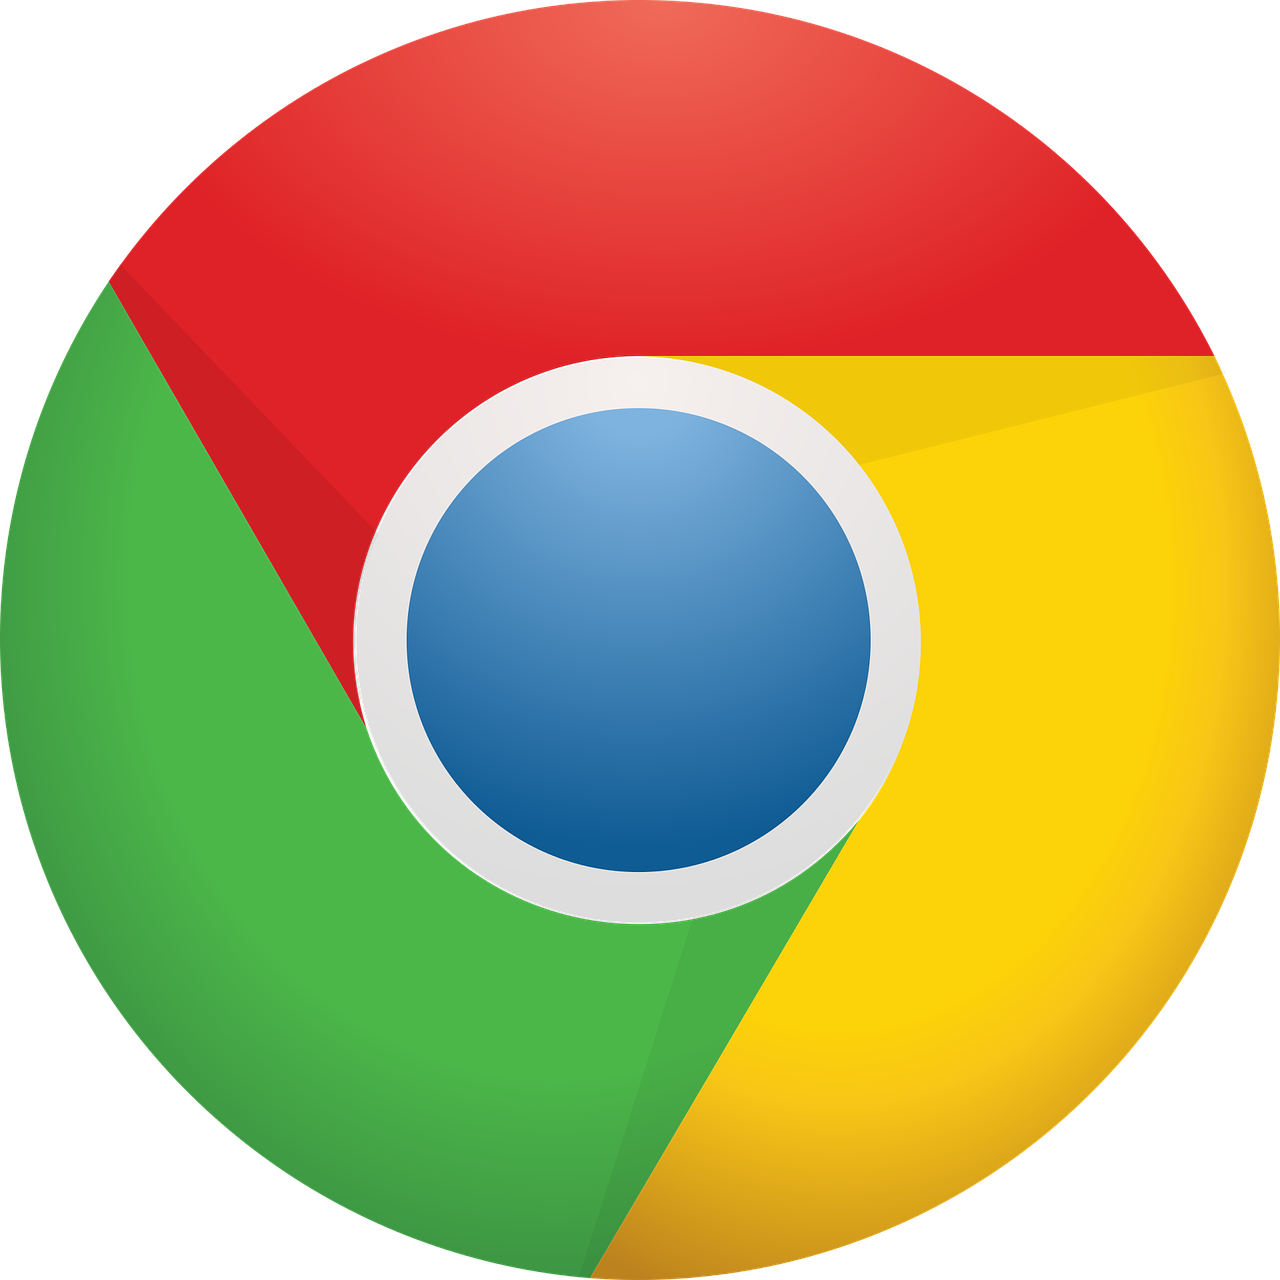 VPN Chrome Uzantısı Hakkında Bilmeniz Gerekenler